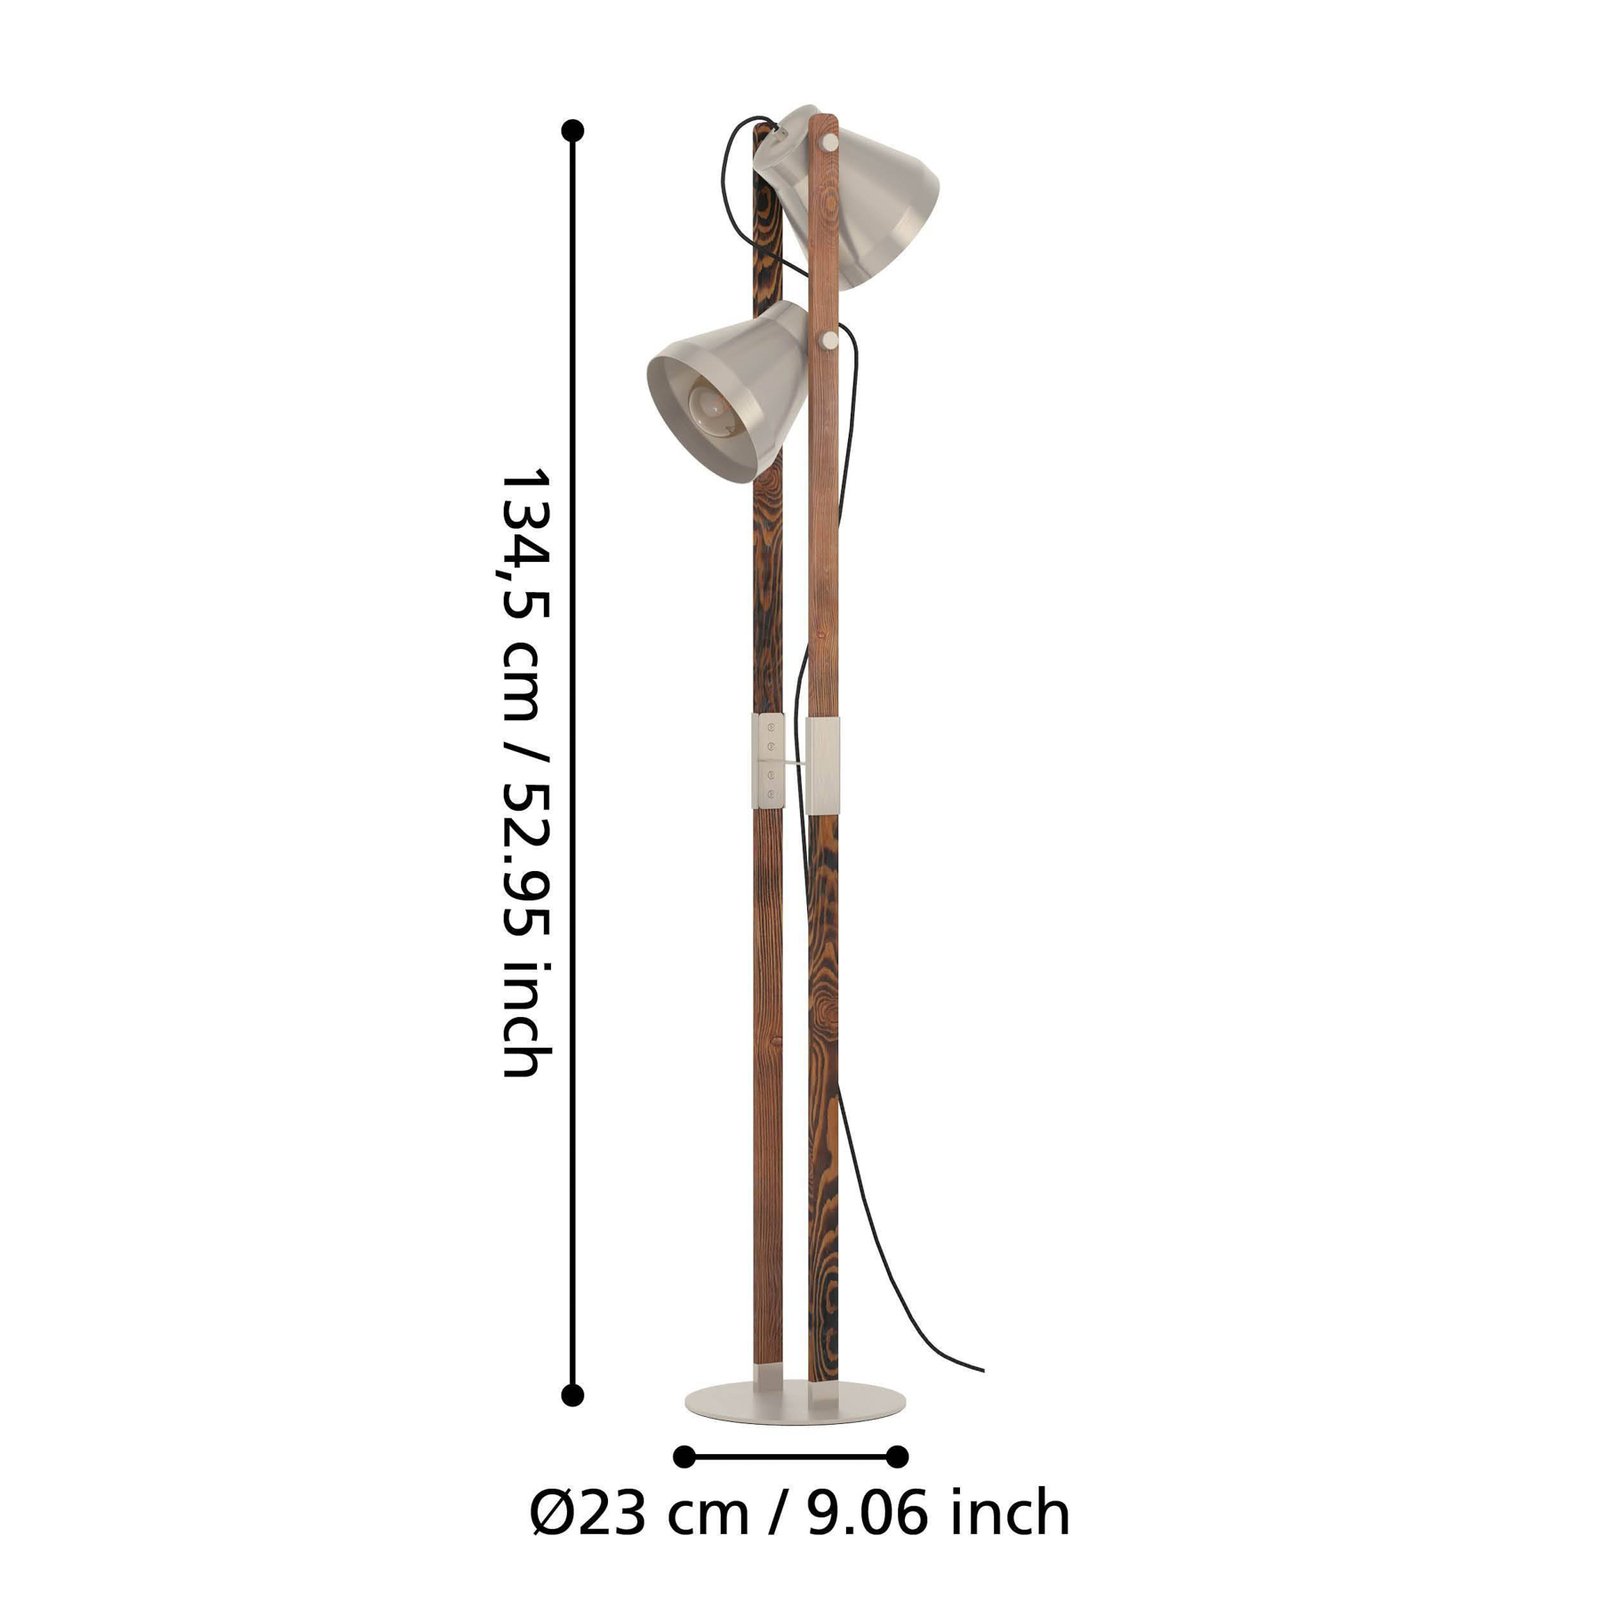 Φωτιστικό δαπέδου Cawton, ύψος 134.5 cm, ατσάλι/καφέ, ατσάλι 2-φωτισμού